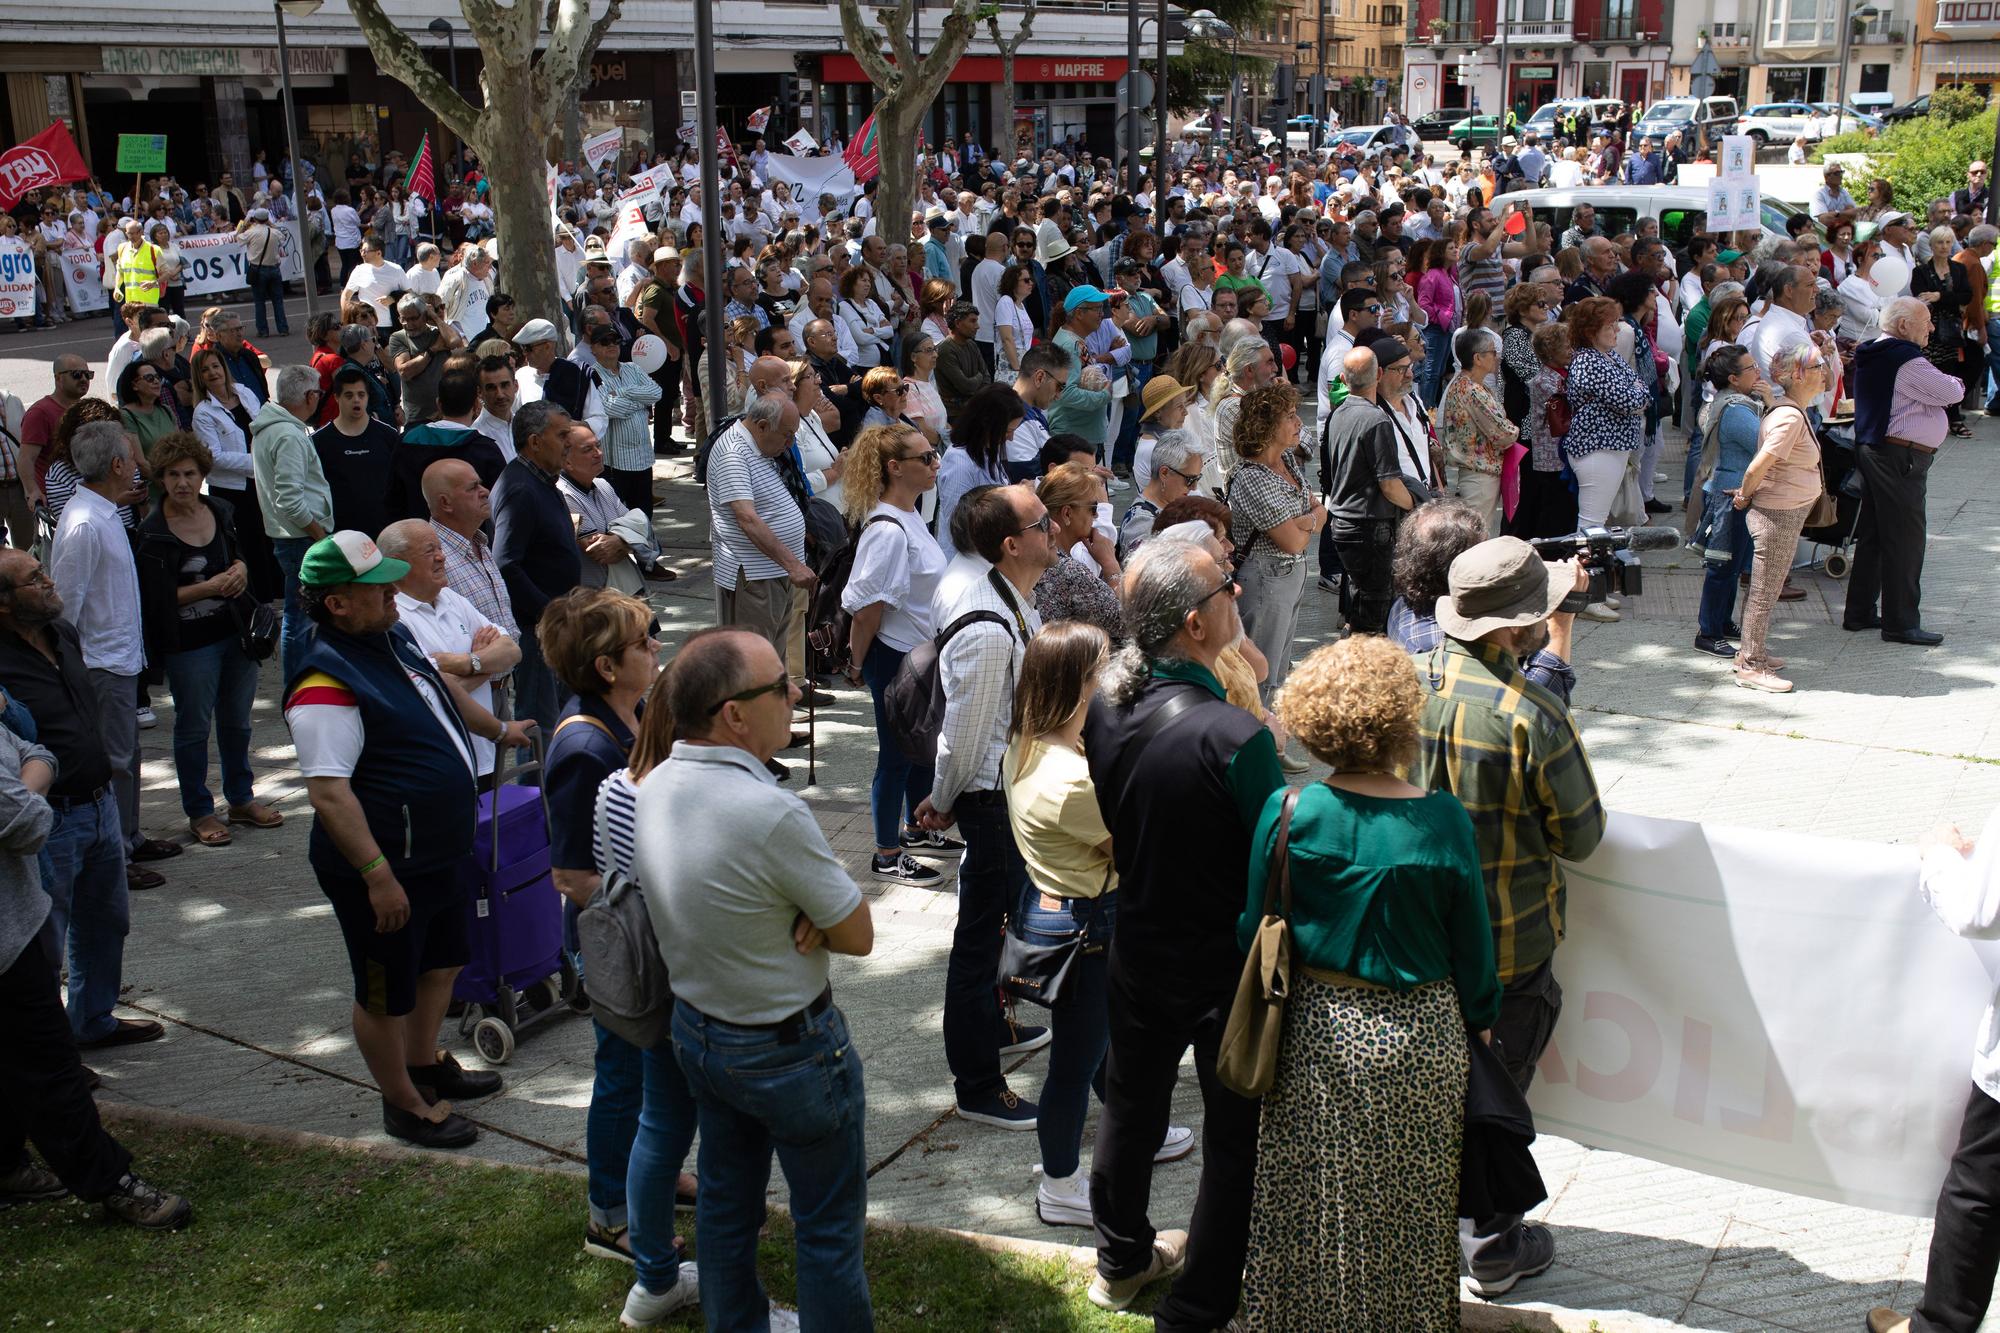 GALERÍA | Las imágenes de la manifestación por la sanidad en Zamora este sábado